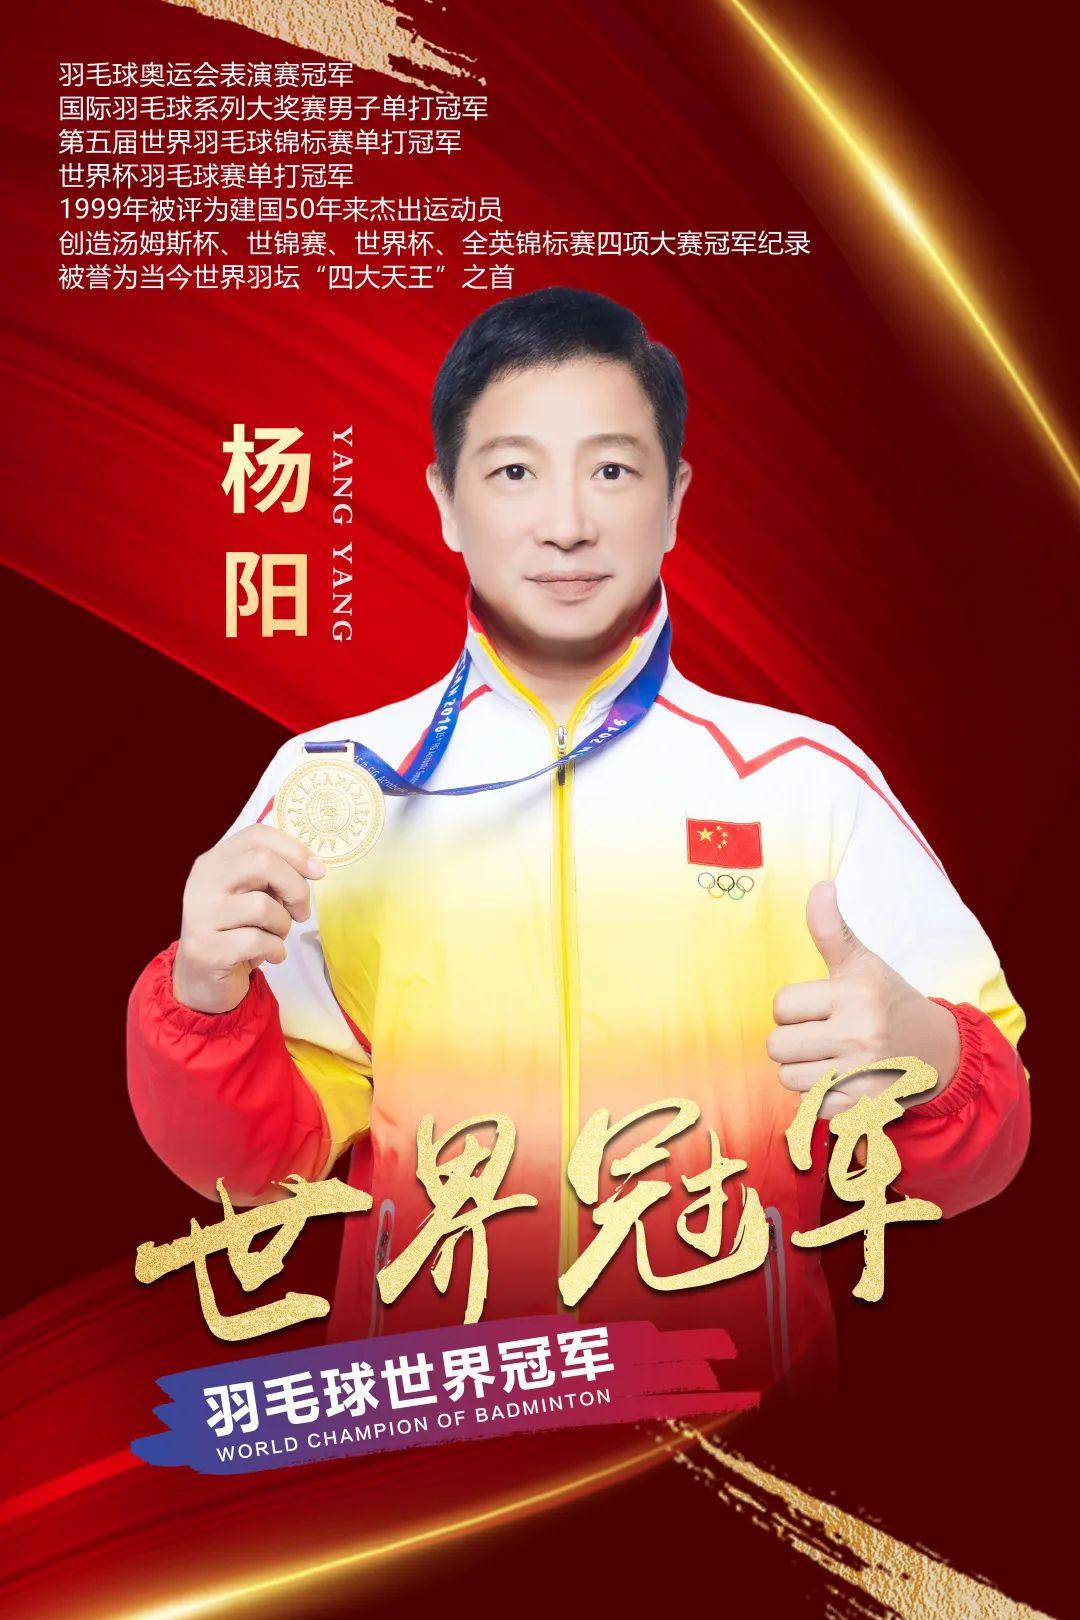 羽毛球冠军杨阳八十年代世界羽坛四大天王中的王中王